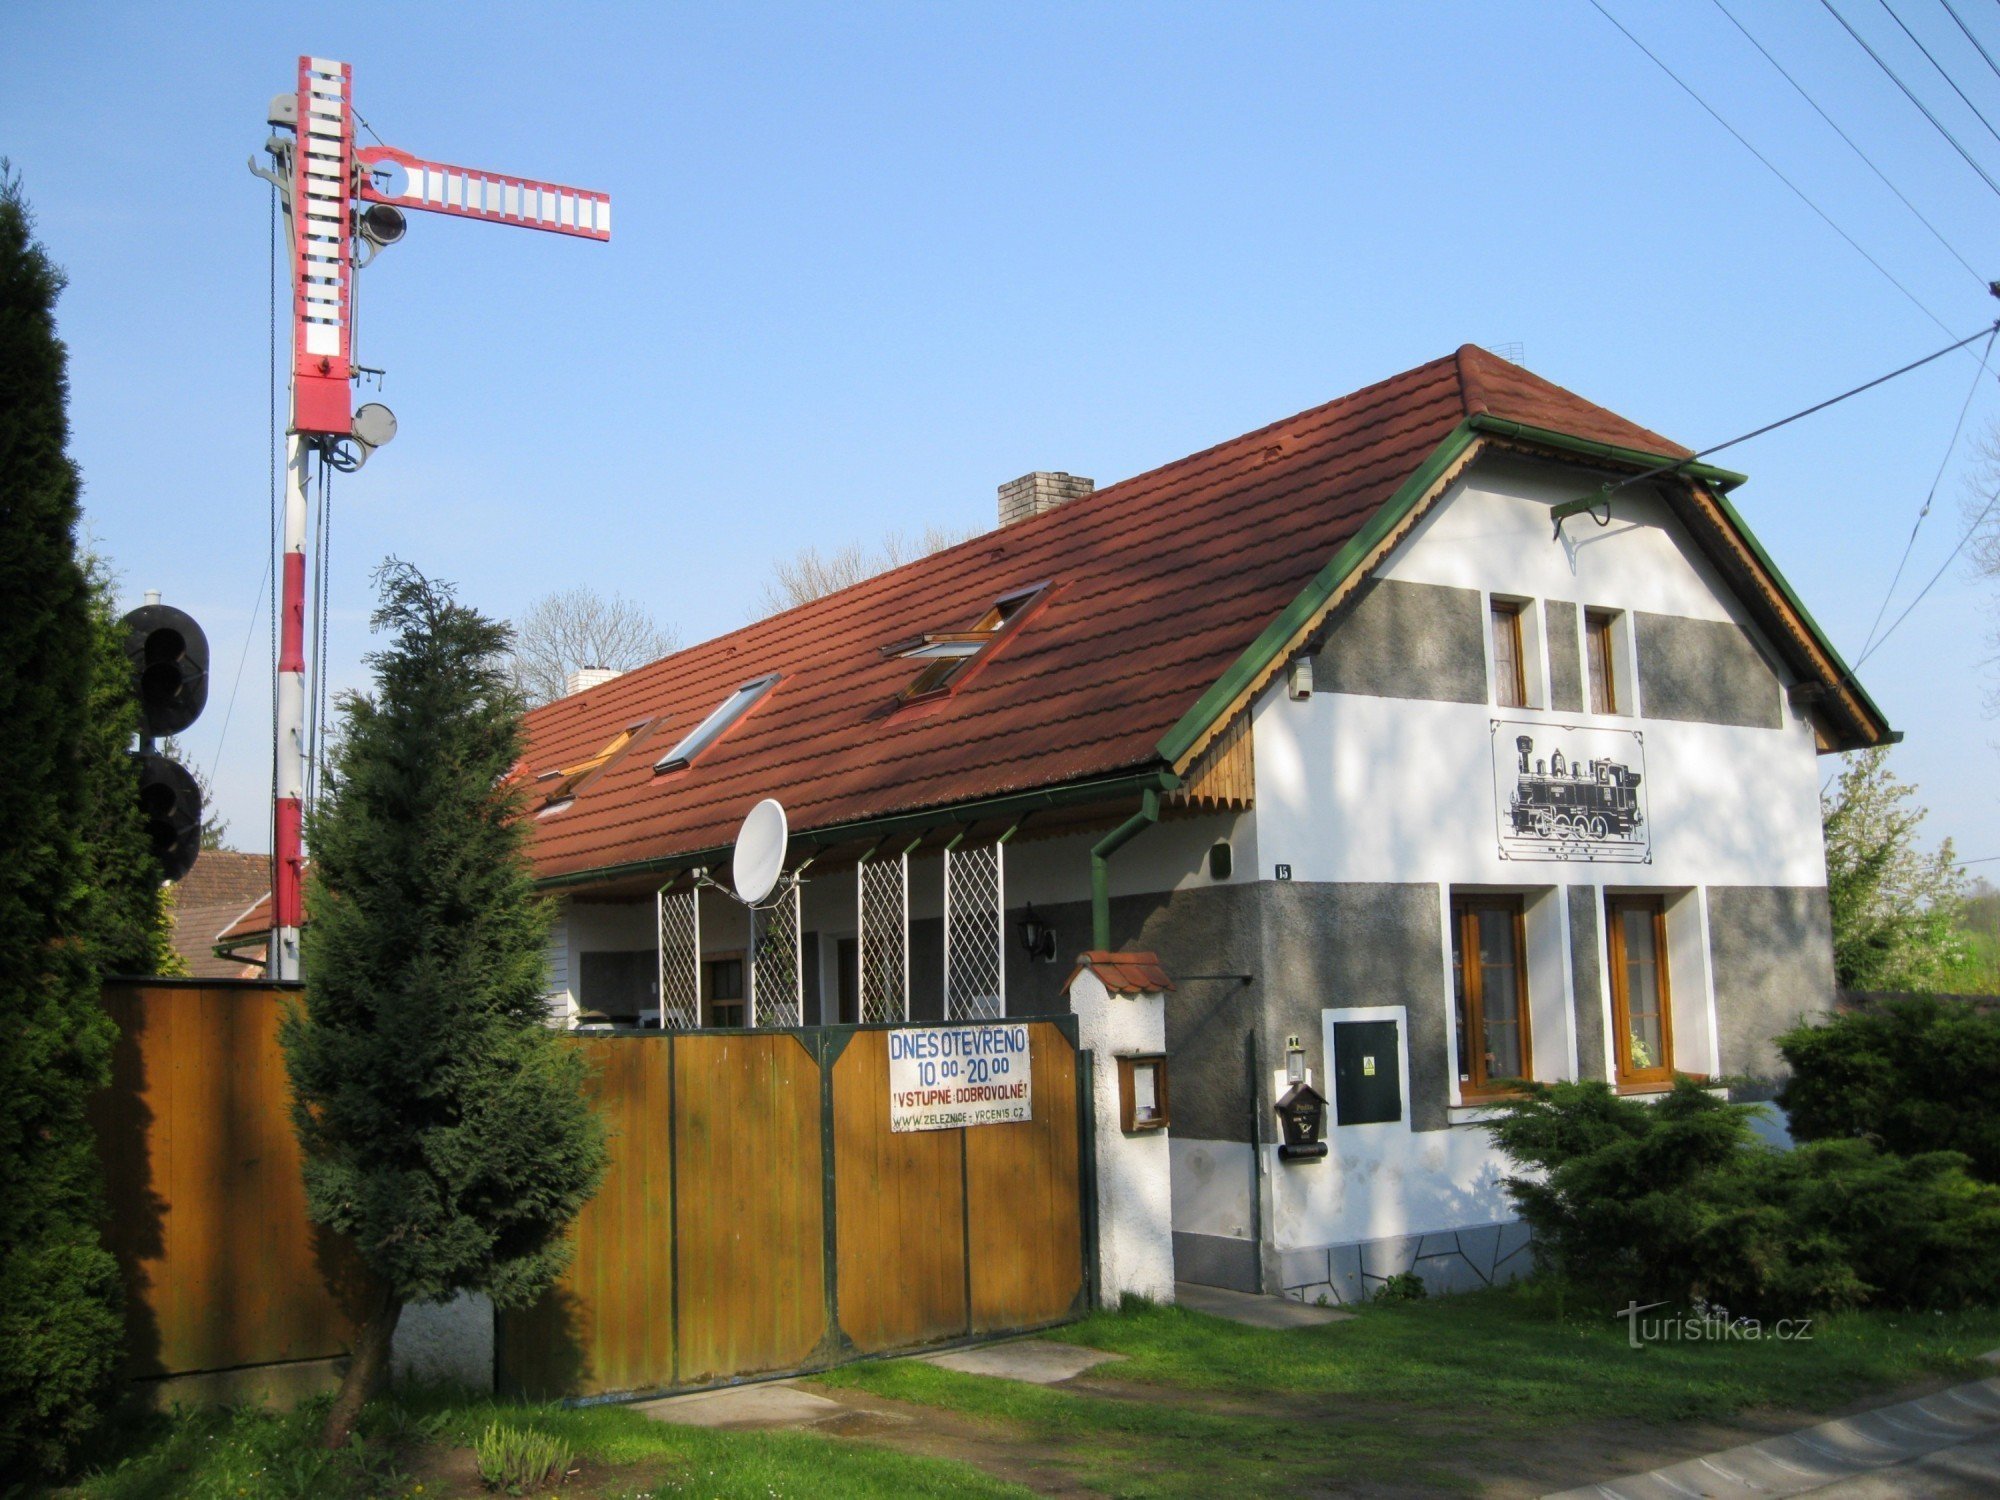 Stacja kolejowa Vrčeň